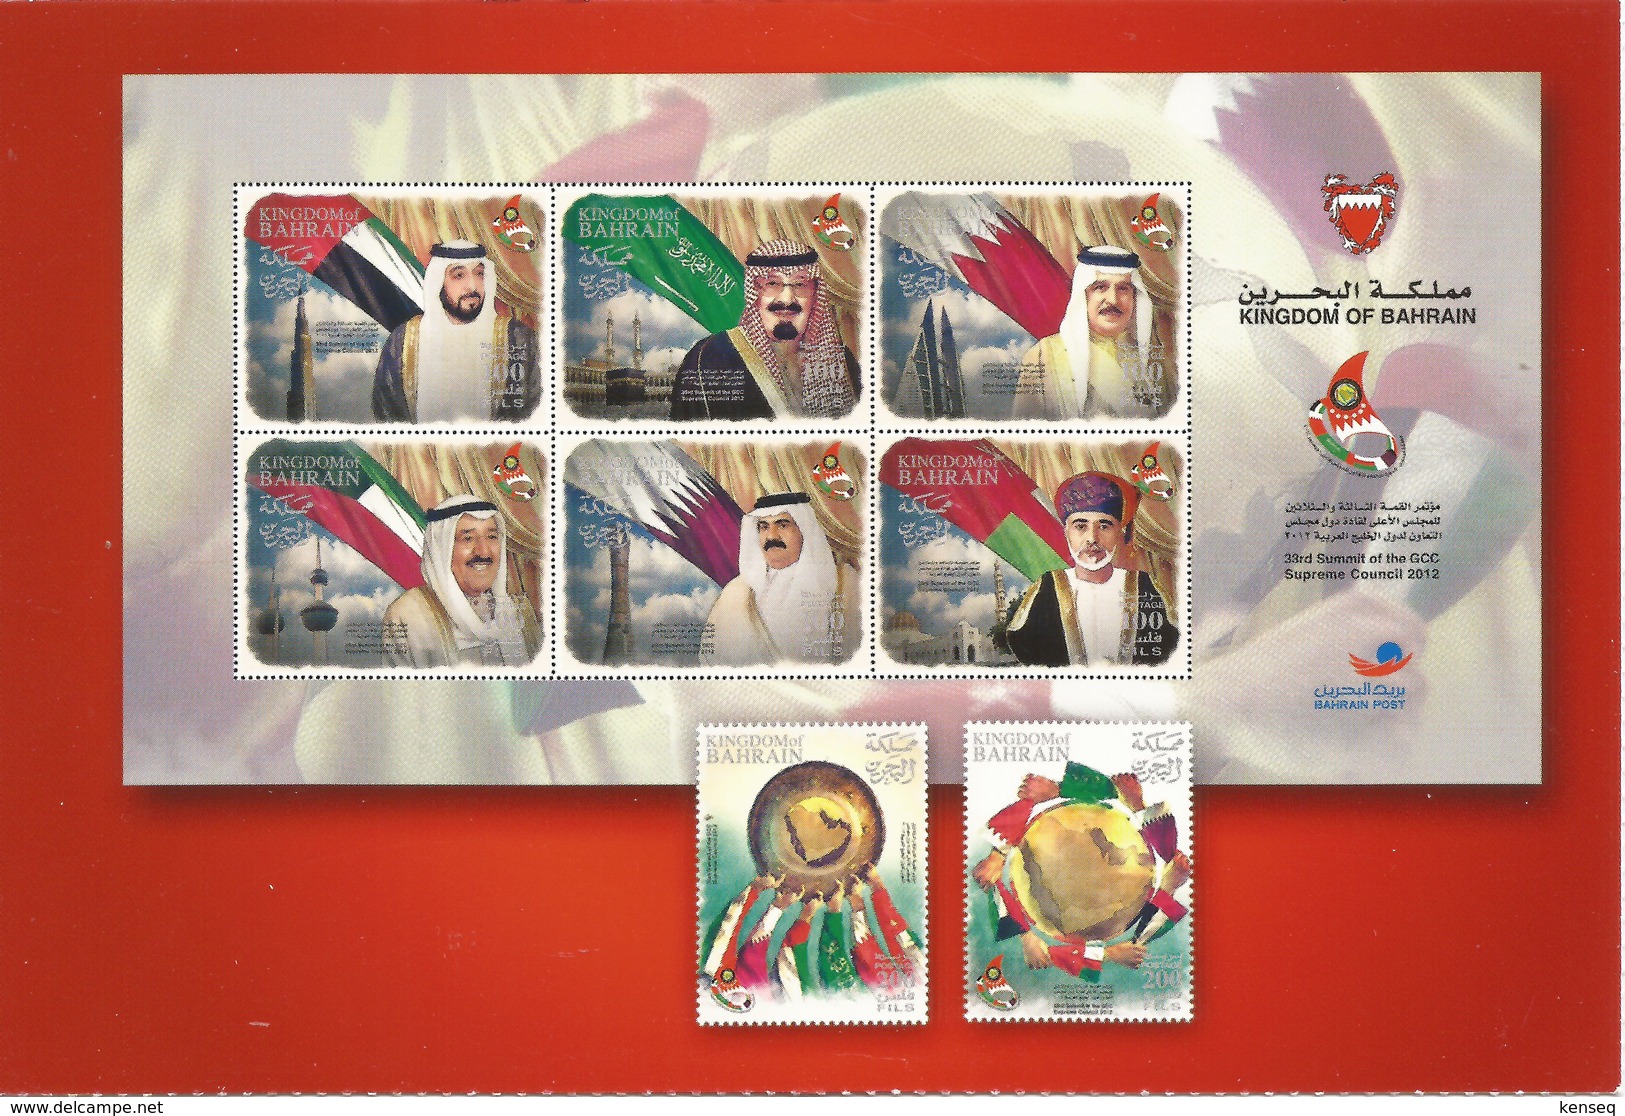 Bahrain 2012 - GCC Supreme Council / Flags - Mint Postcard - Bahrain